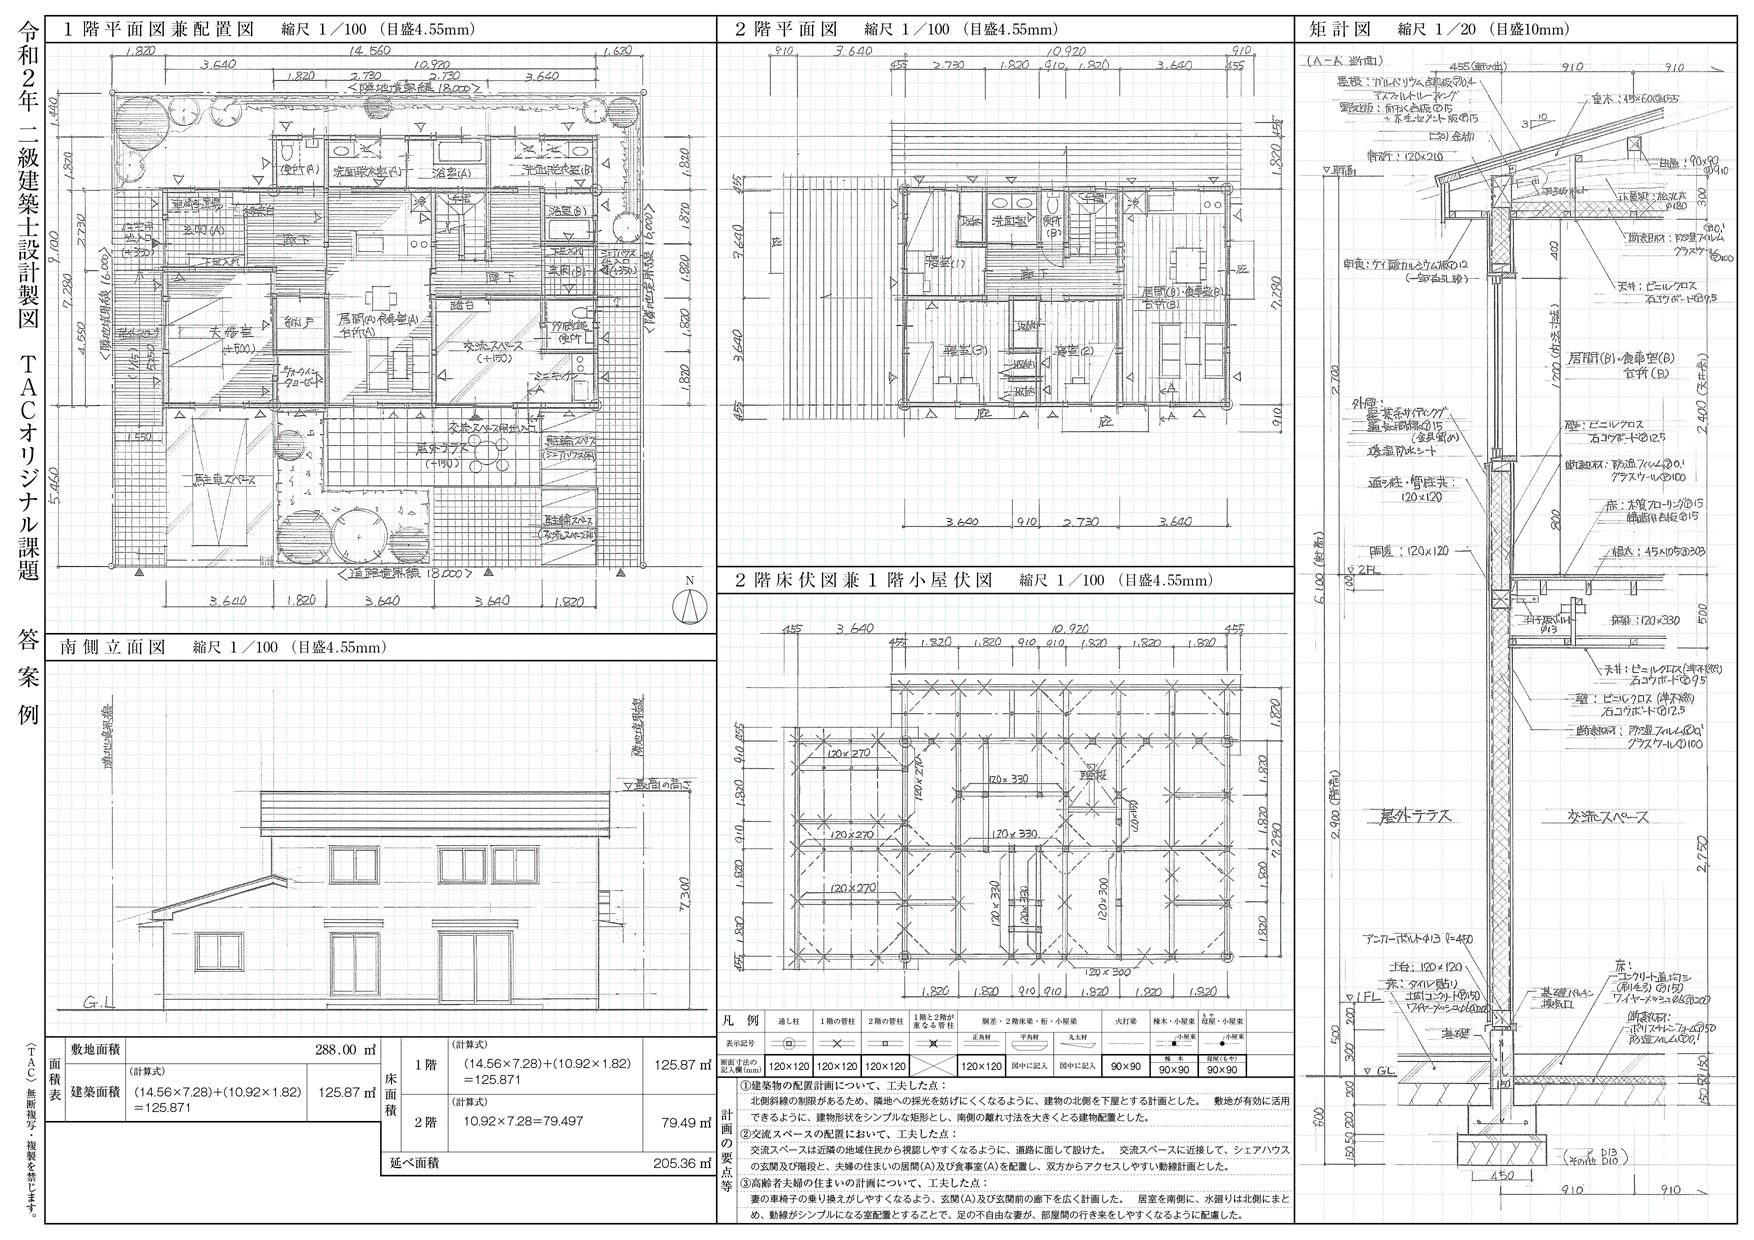 建築設備士二次試験 (設計製図)過去問題・解答例・解答用紙(A2) 日建 